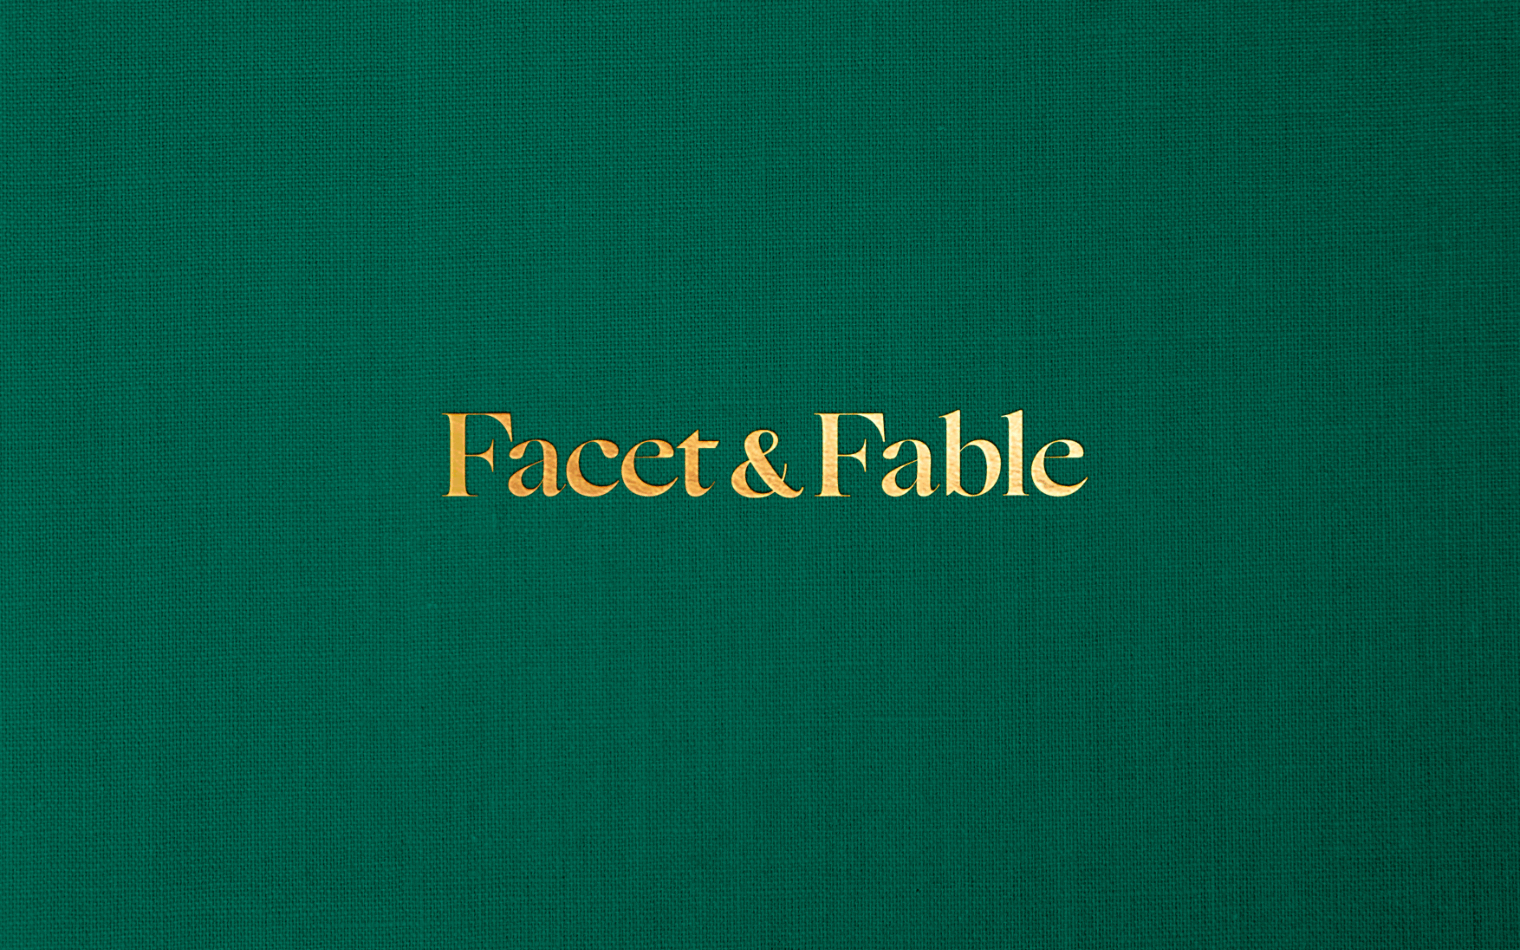 Facet & Fable | Steve Edge Design